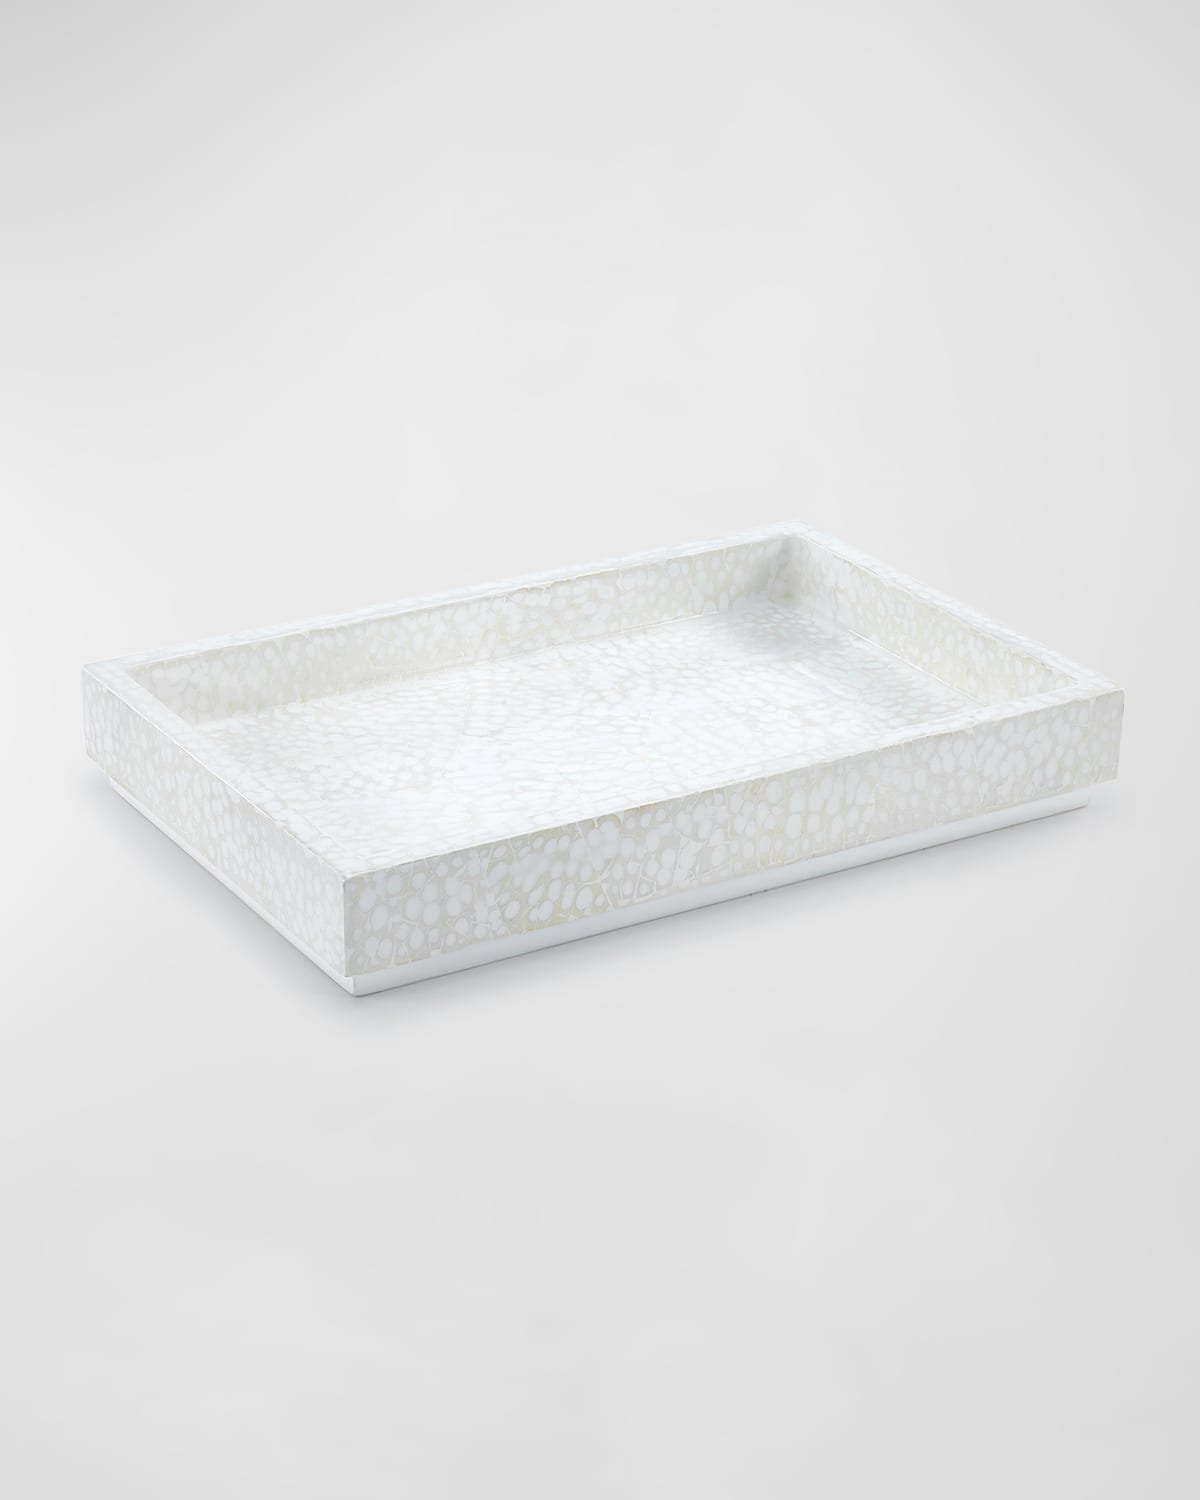 Labrazel Ovate Eggshell Tray In Ivory/white